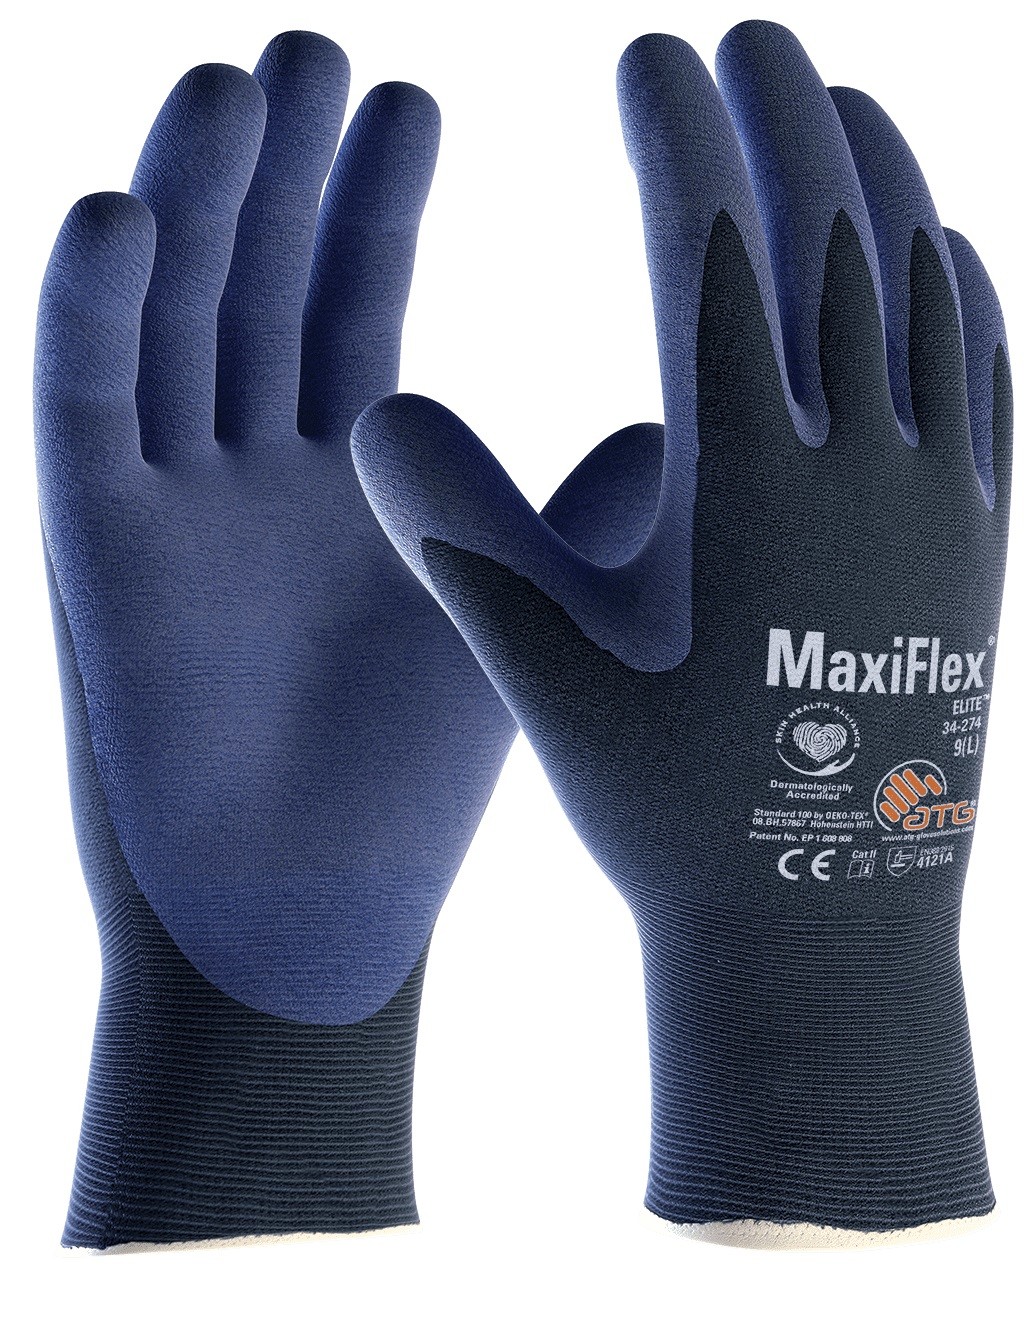 Робочі рукавички MaxiFlex® Elite™ 34-274 Фото